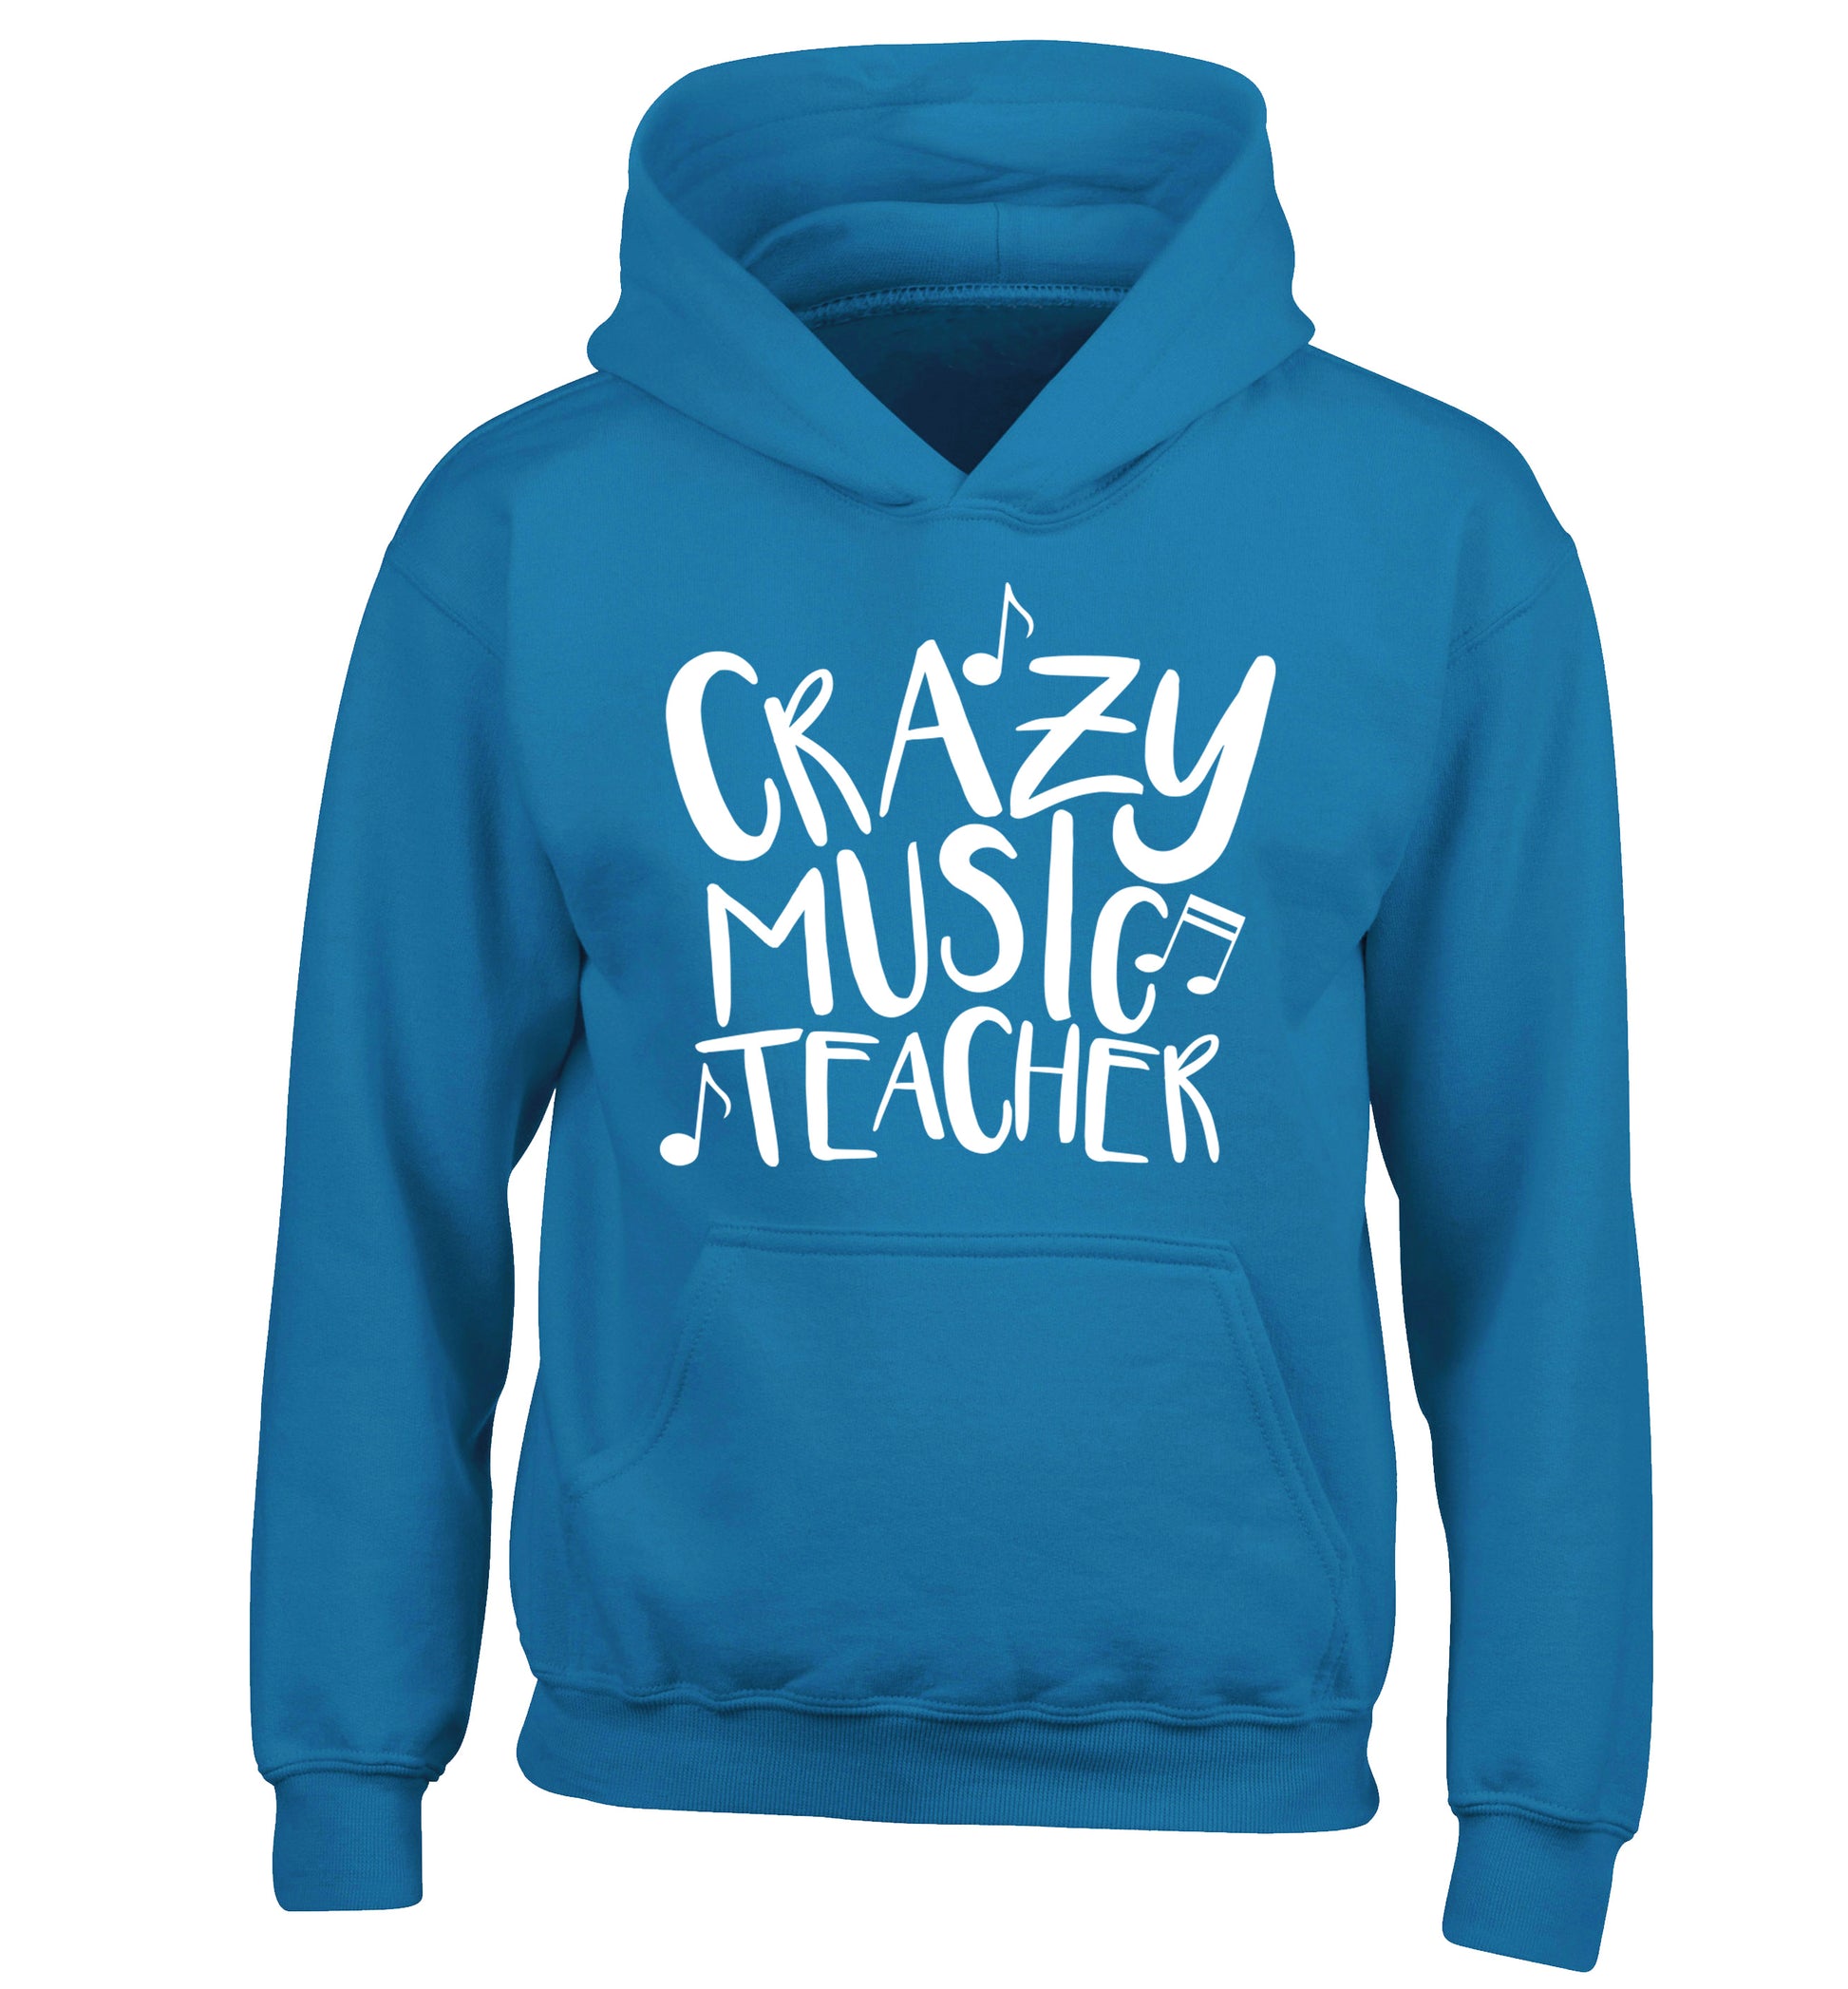 Crazy music teacher children's blue hoodie 12-13 Years